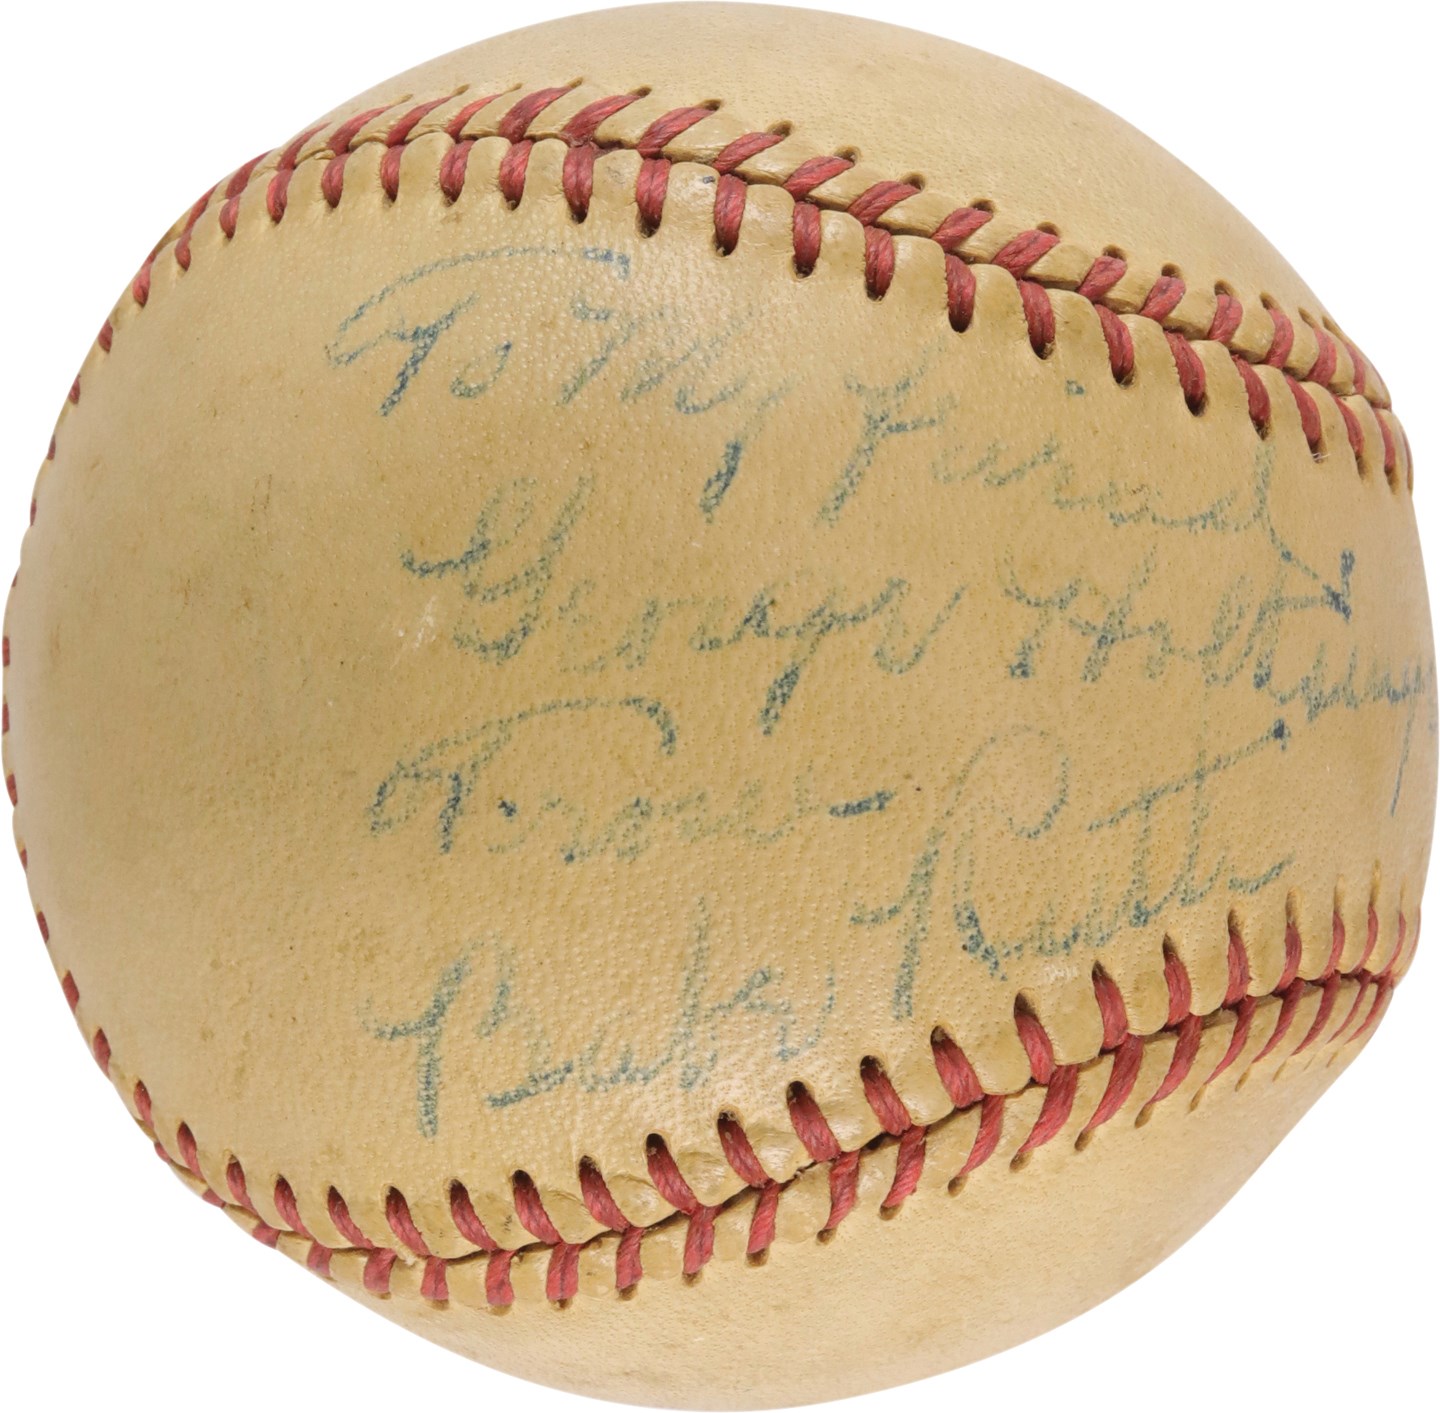 - 1948 Babe Ruth "To George" Single-Signed Baseball (PSA)